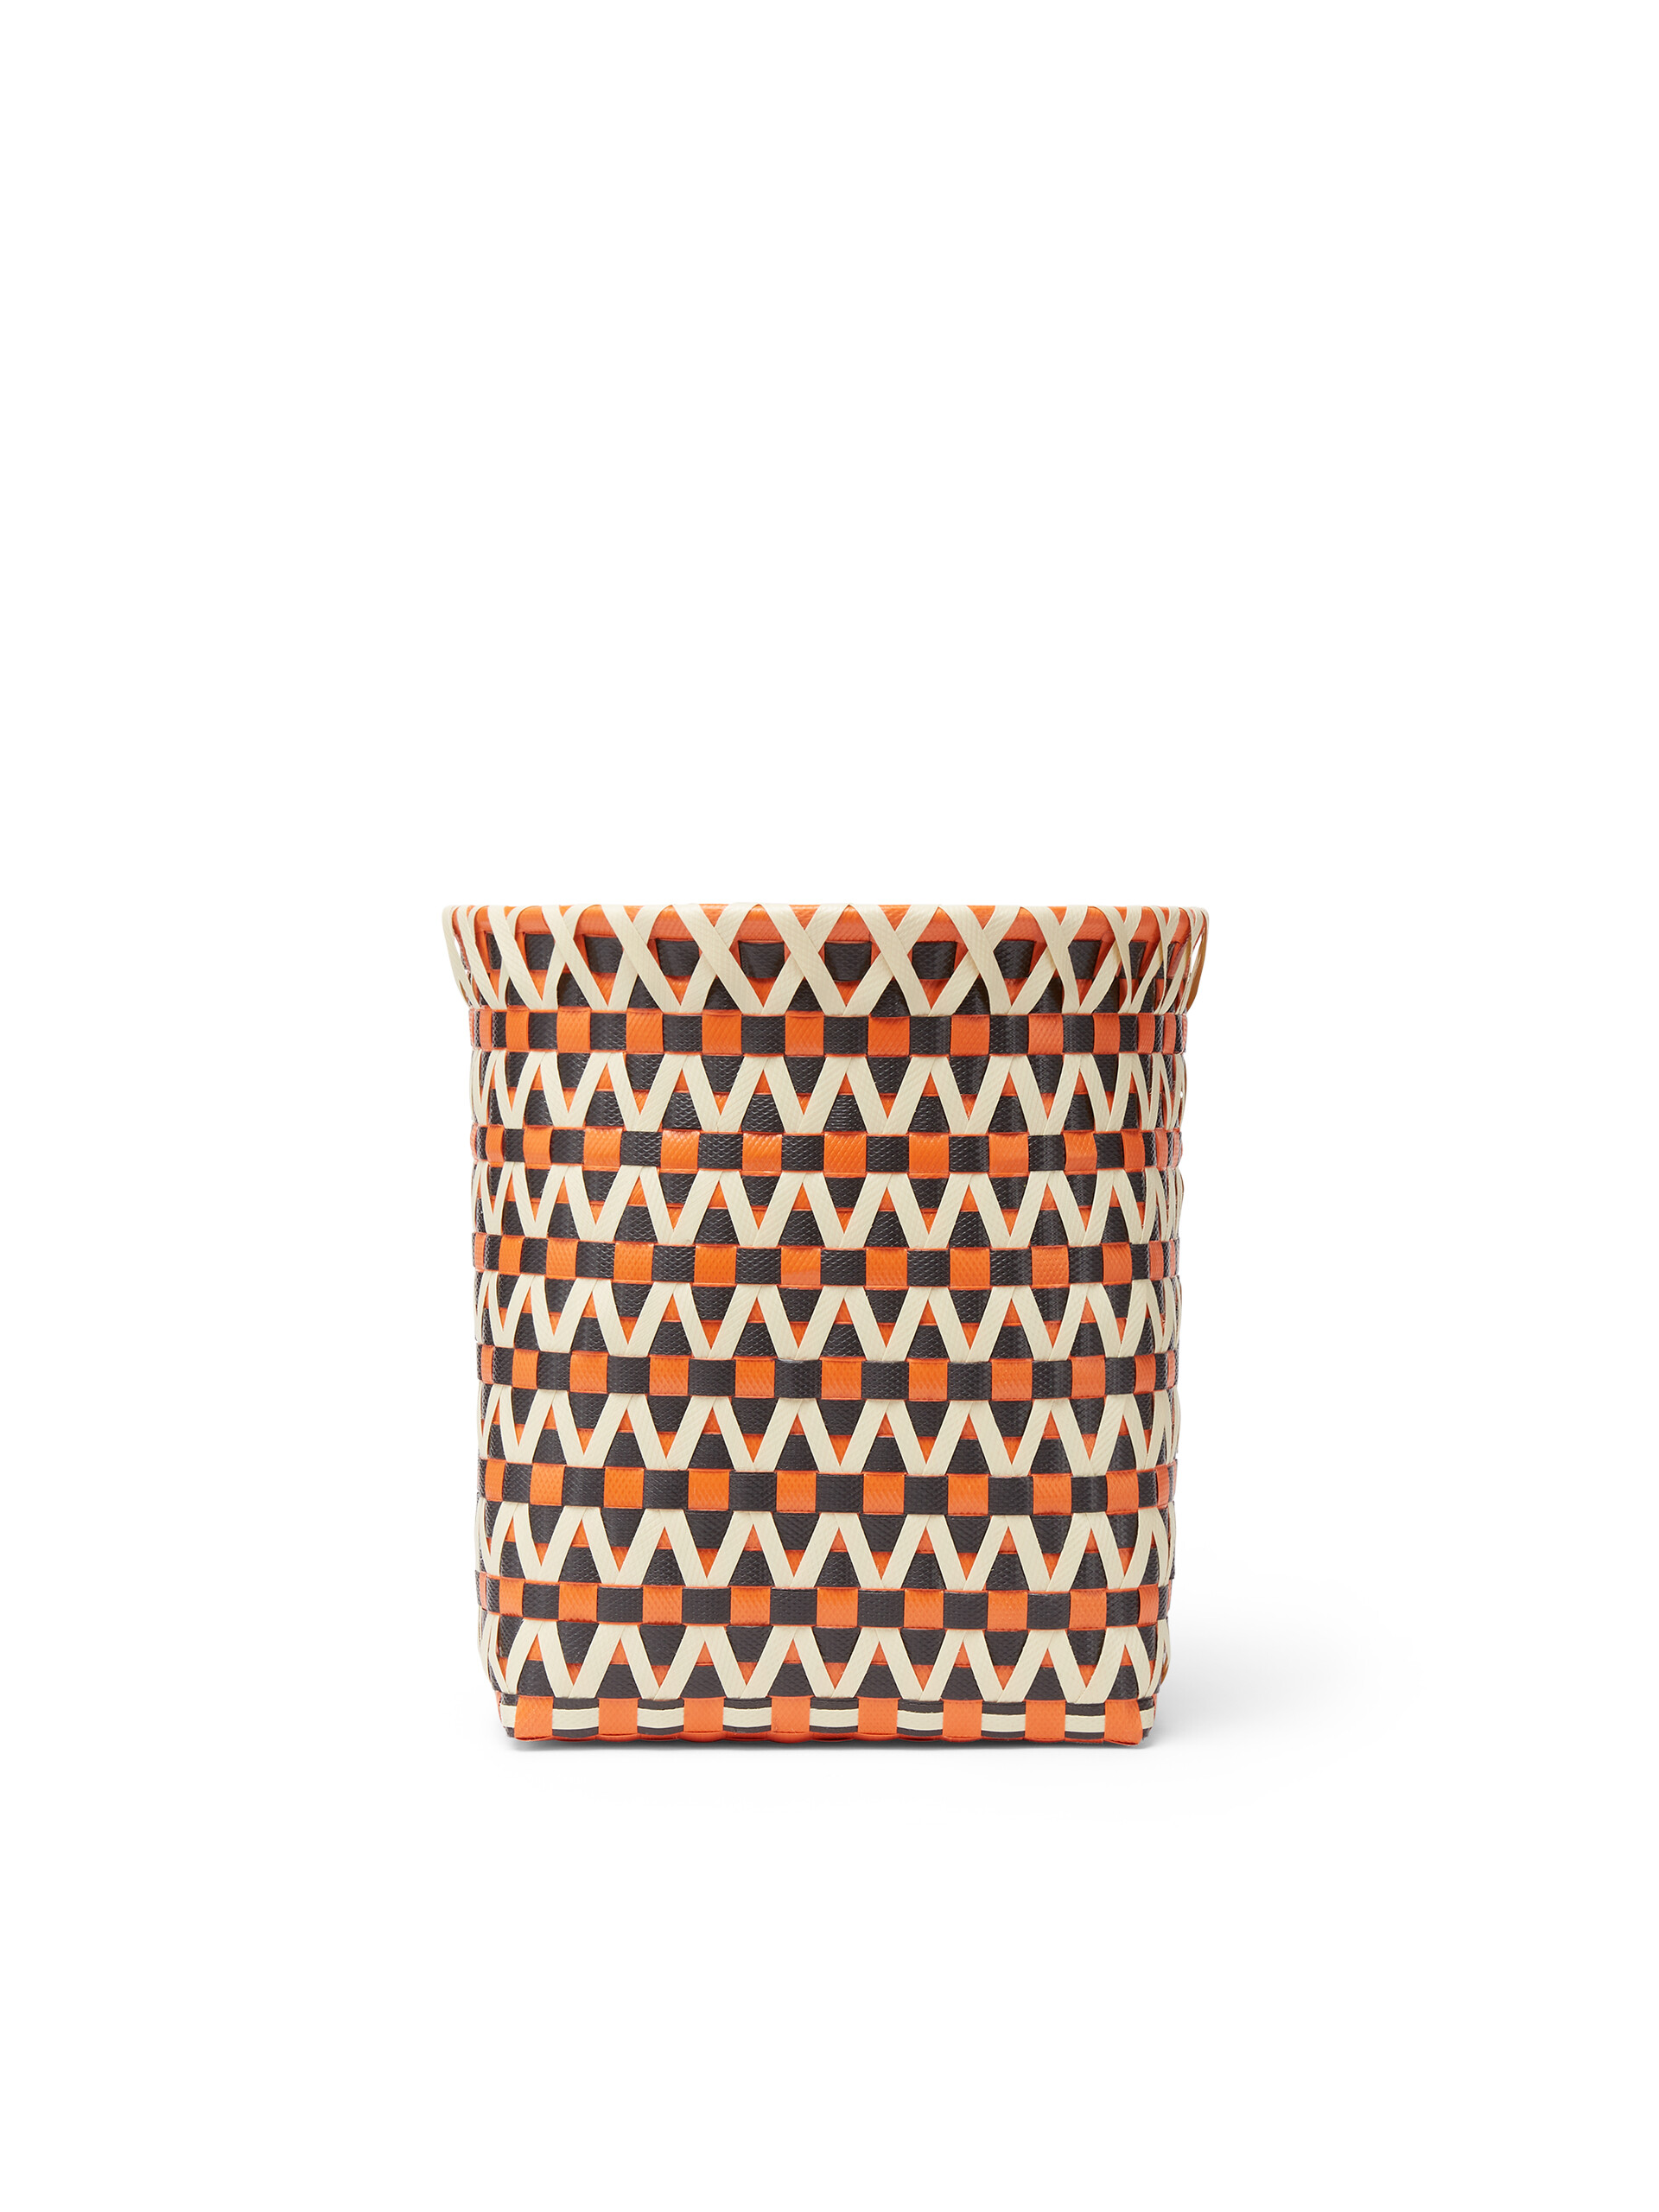 Corbeille MARNI MARKET en PVC tressé orange, noir et blanc - Accessoires - Image 3